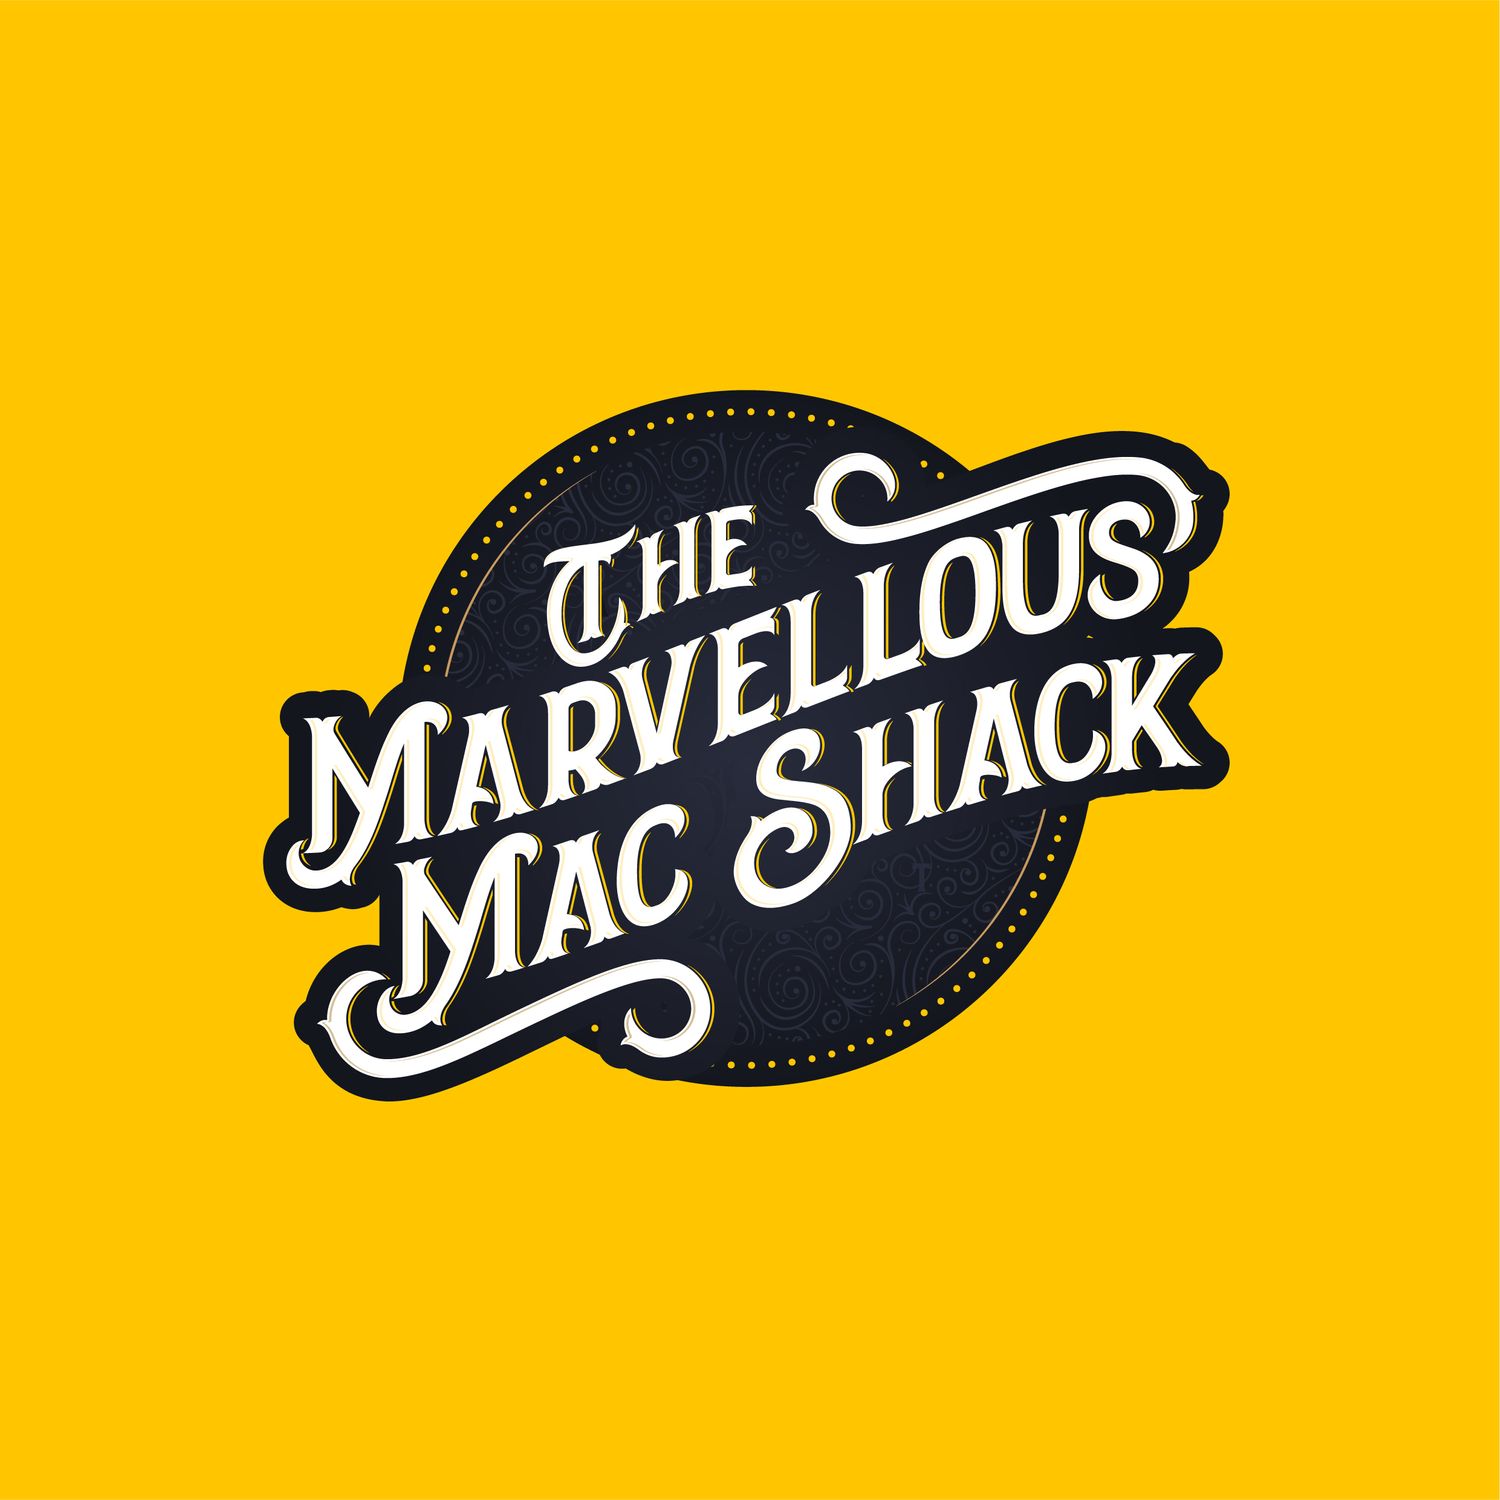 The Marvellous Mackshack